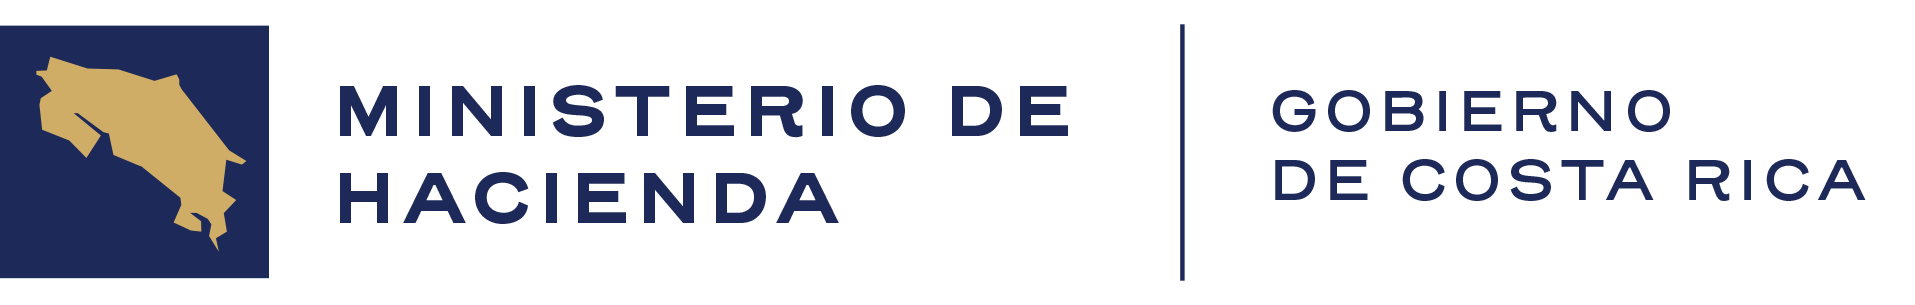 Logotipo Ministerio de Hacienda Costa Rica